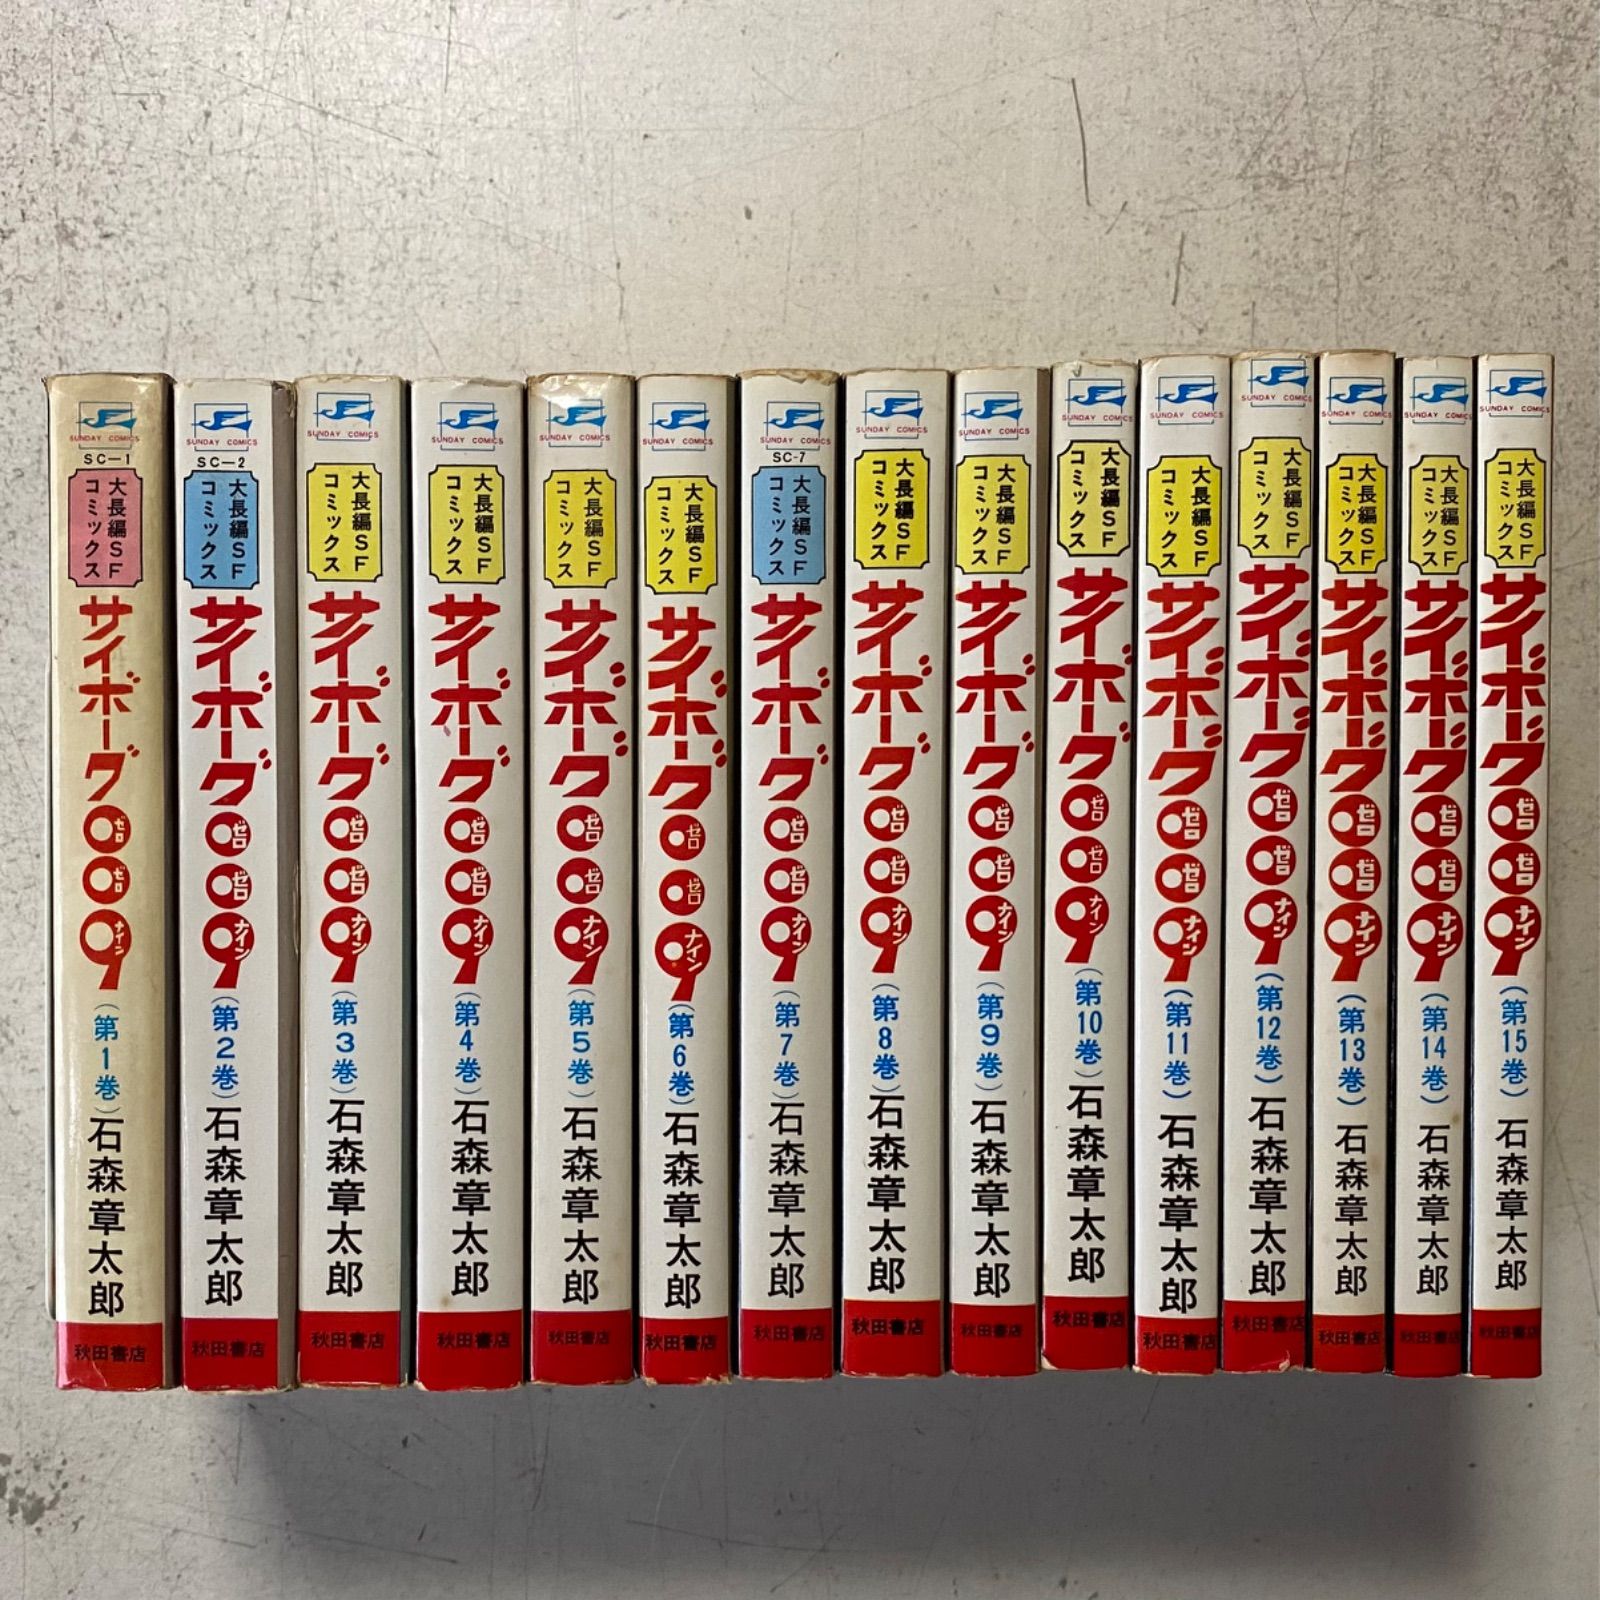 大長編SFコミックス サイボーグ009 コミック 全15巻完結セット 石ノ森 